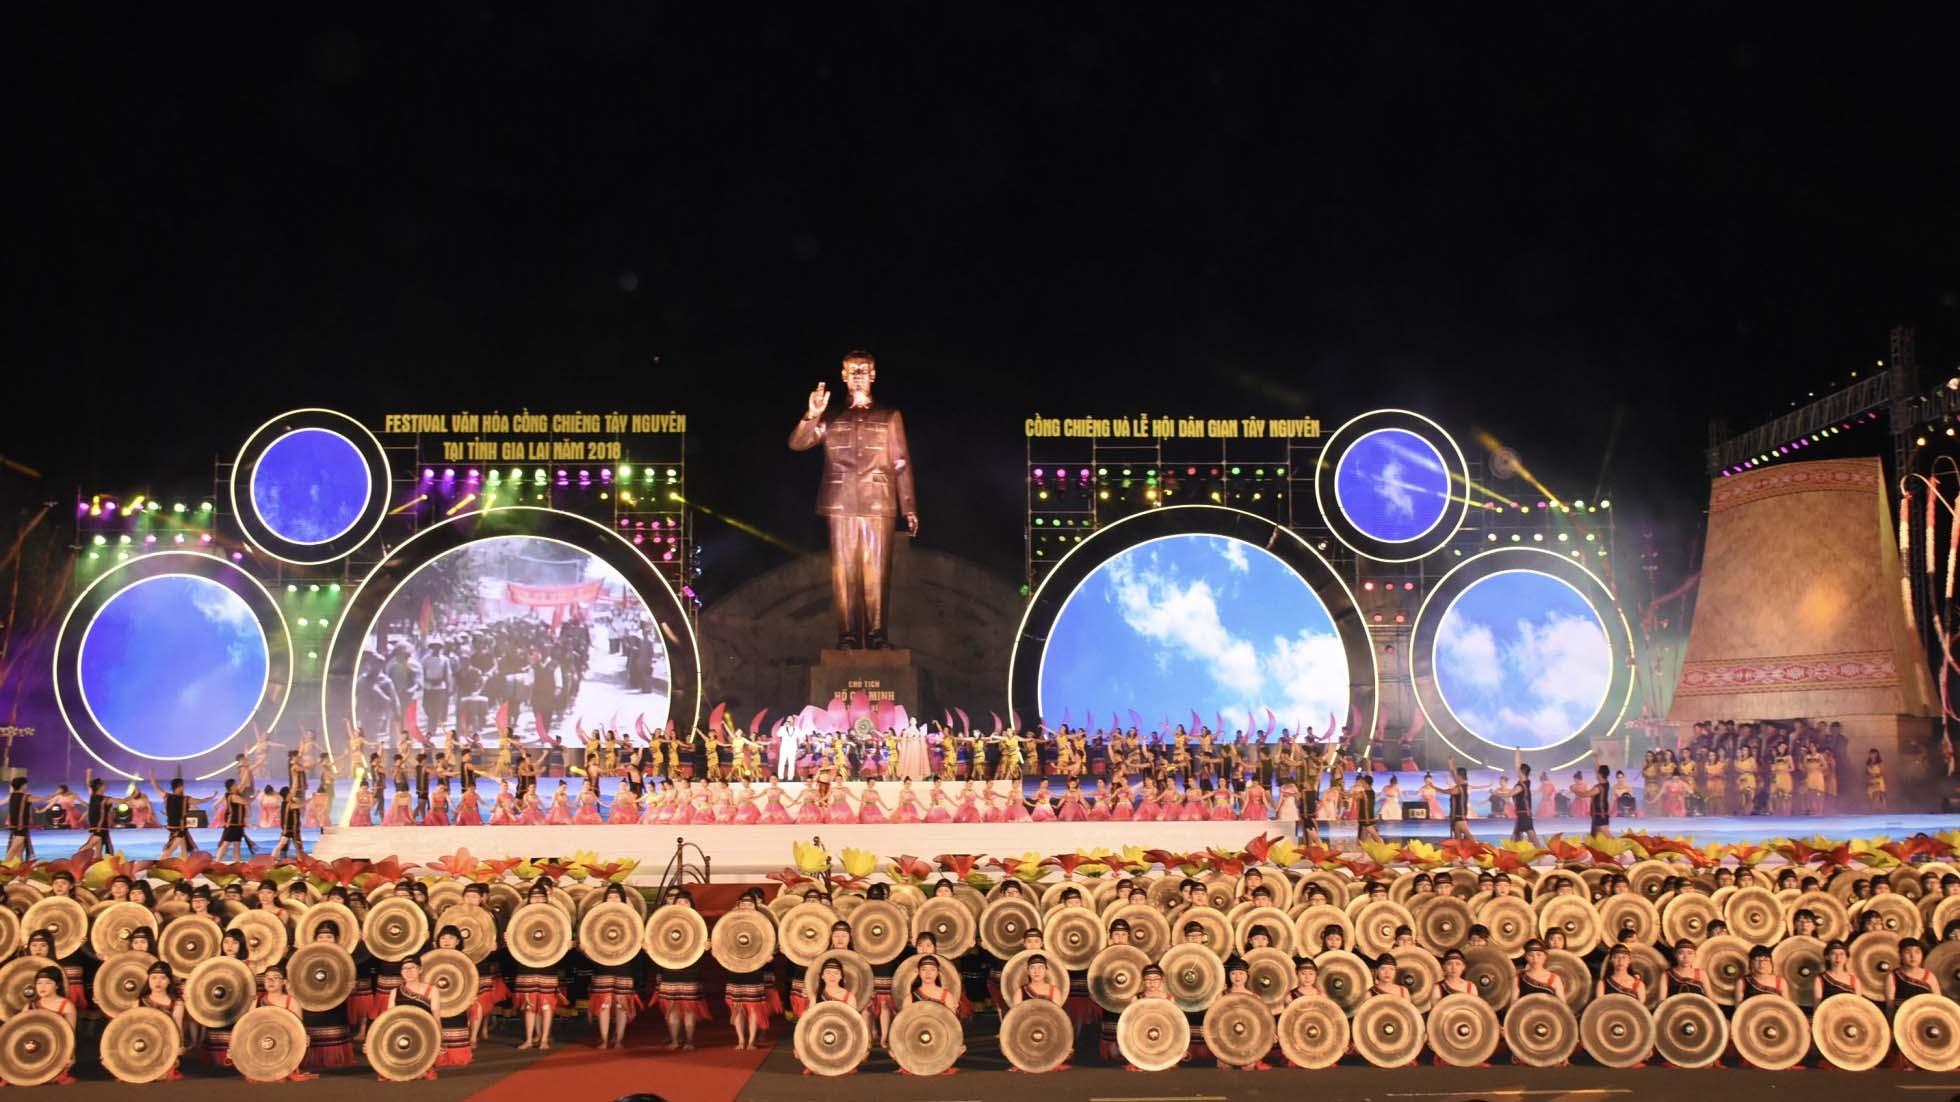 Quang cảnh lễ khai mạc Festival Văn hóa Cồng chiêng Tây Nguyên tại Gia Lai năm 2018. Ảnh: Lam Nguyên